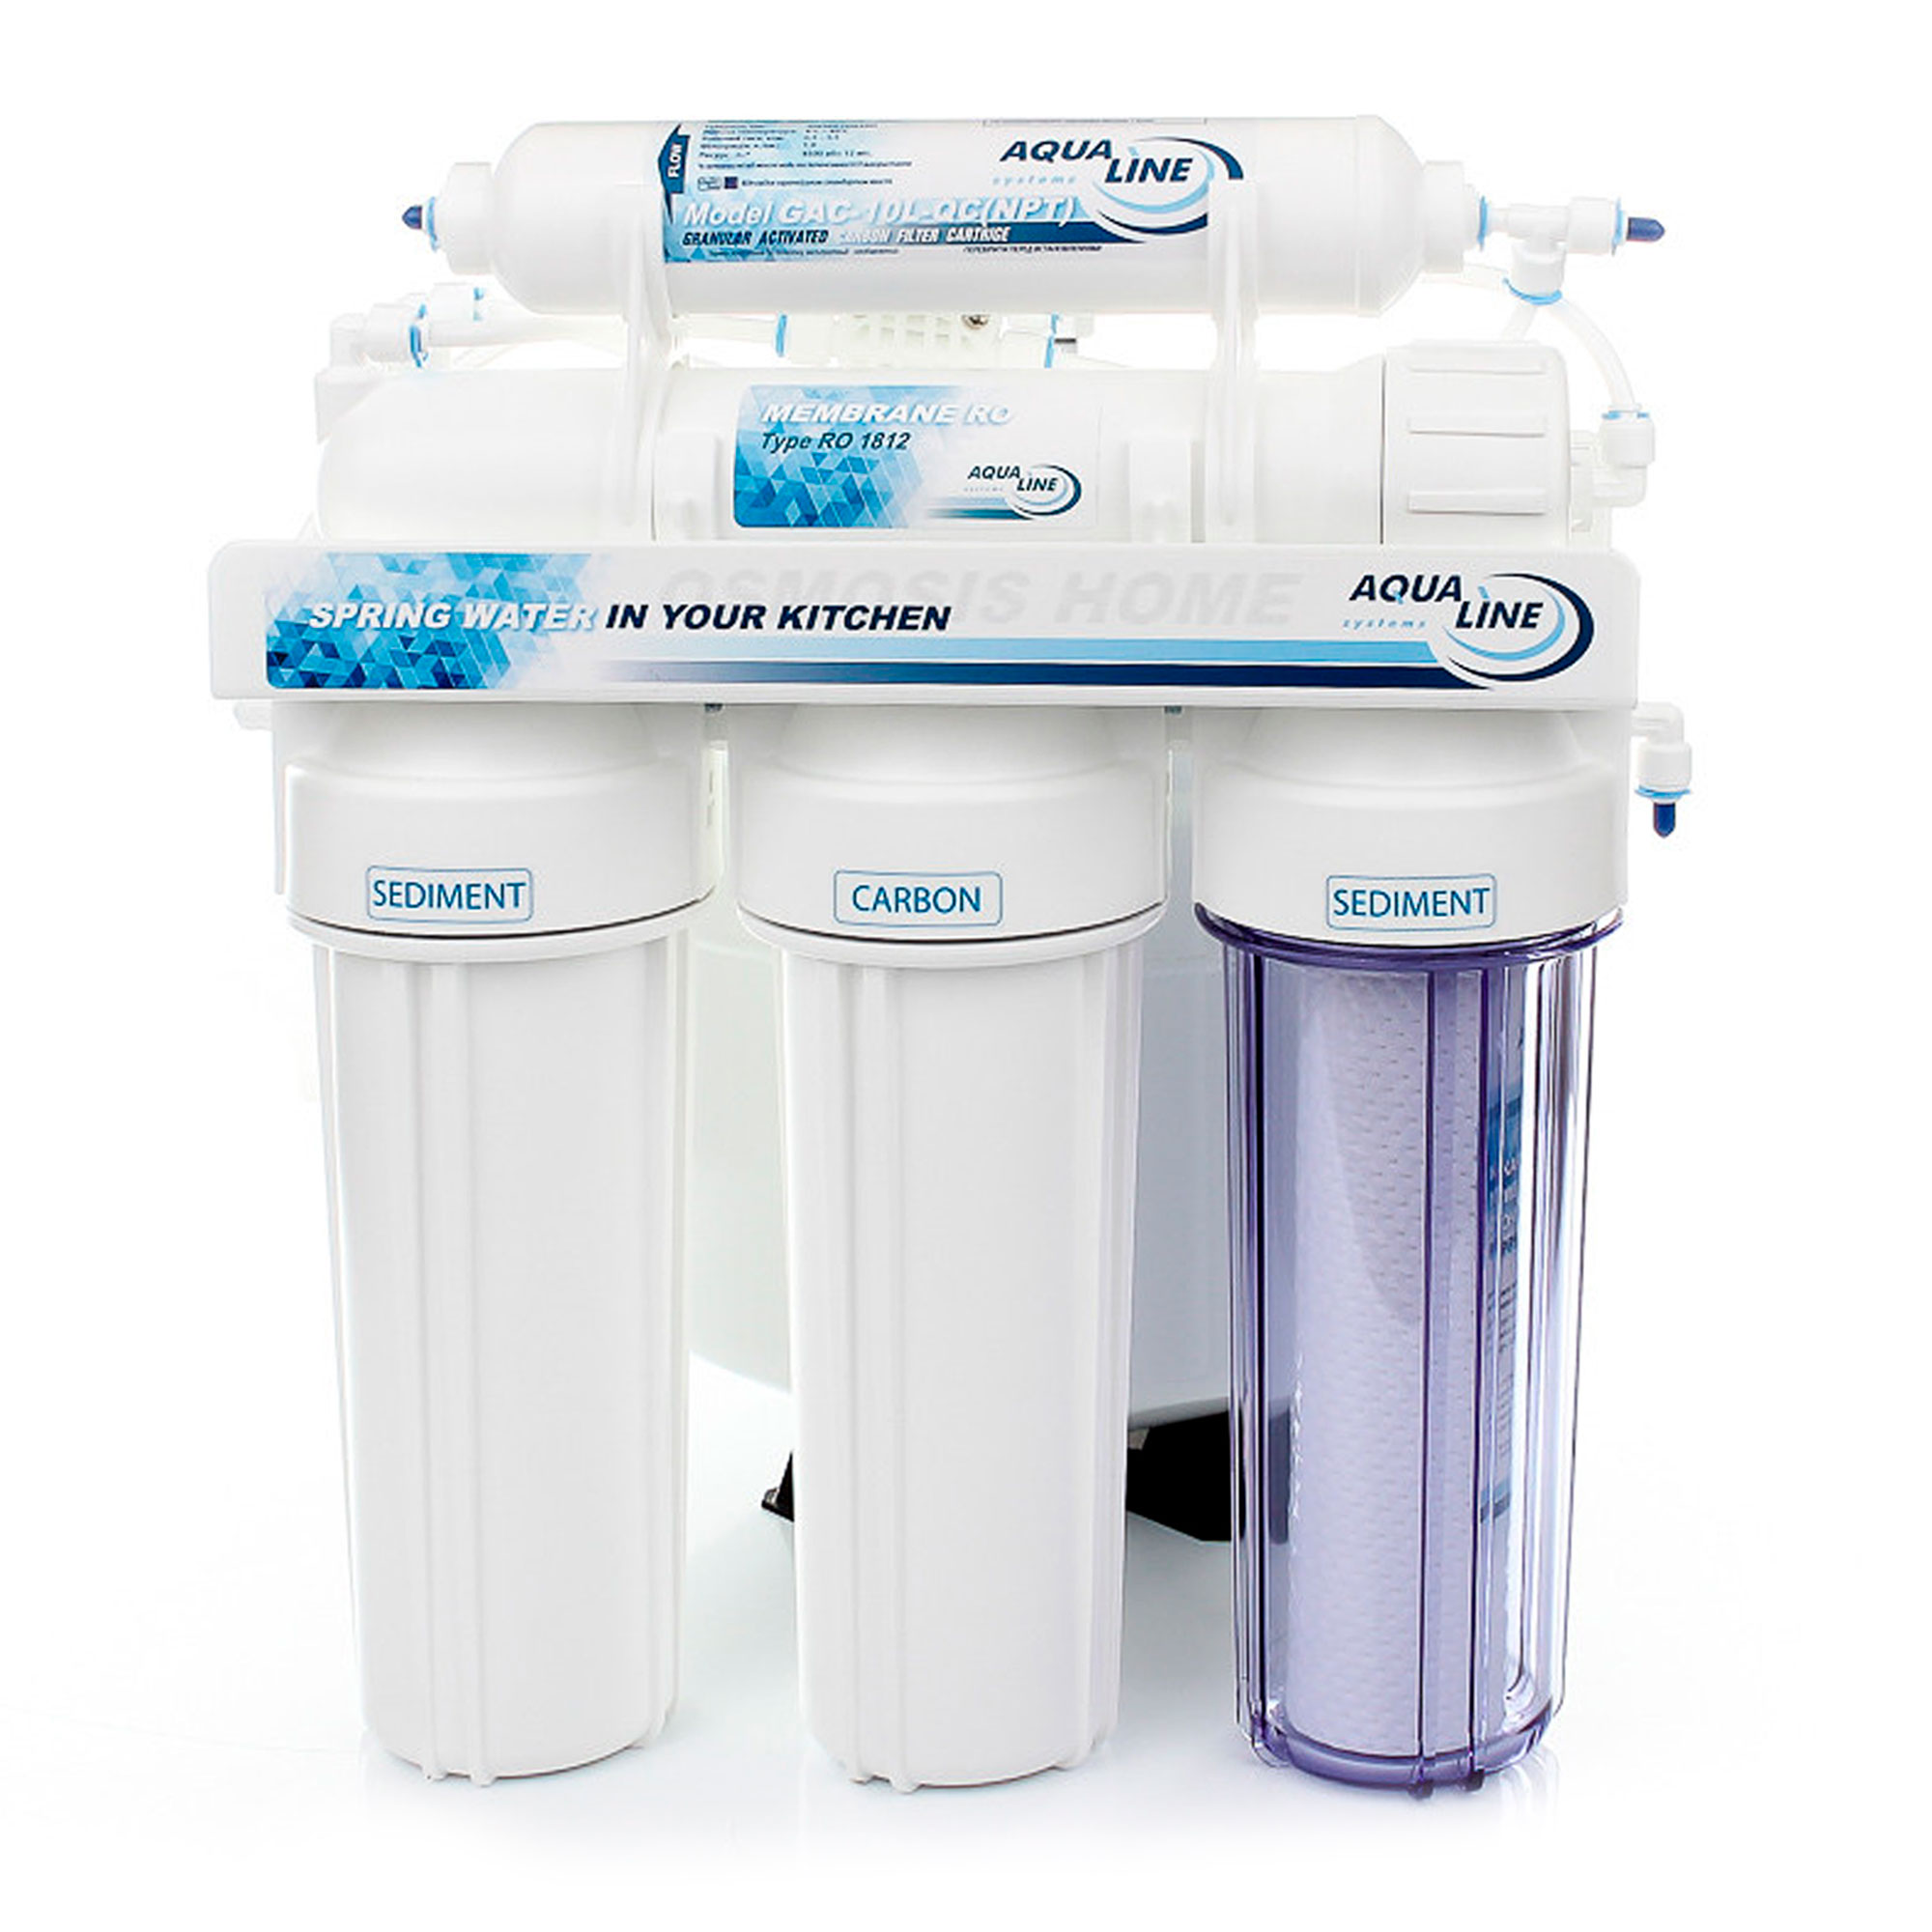 Купить фильтр aqualine для воды Aqualine RO-5 MT18 в Киеве